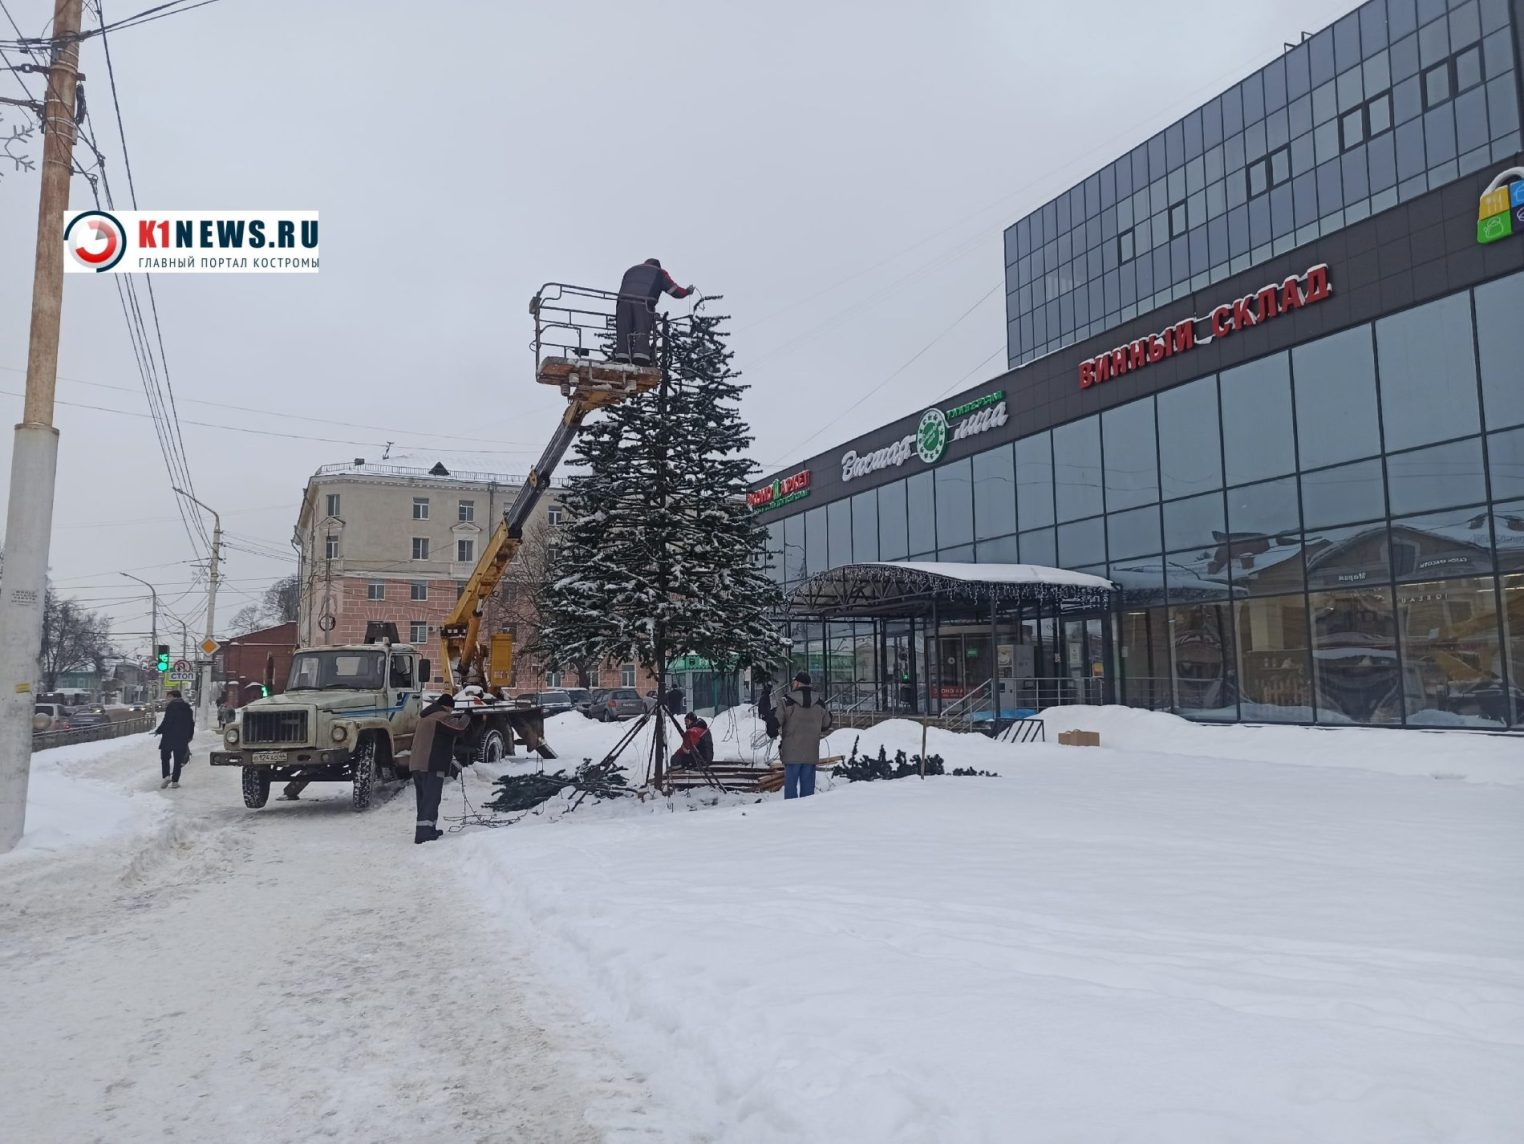 Вот и сказочке конец: последние новогодние атрибуты убирают с улиц Костромы